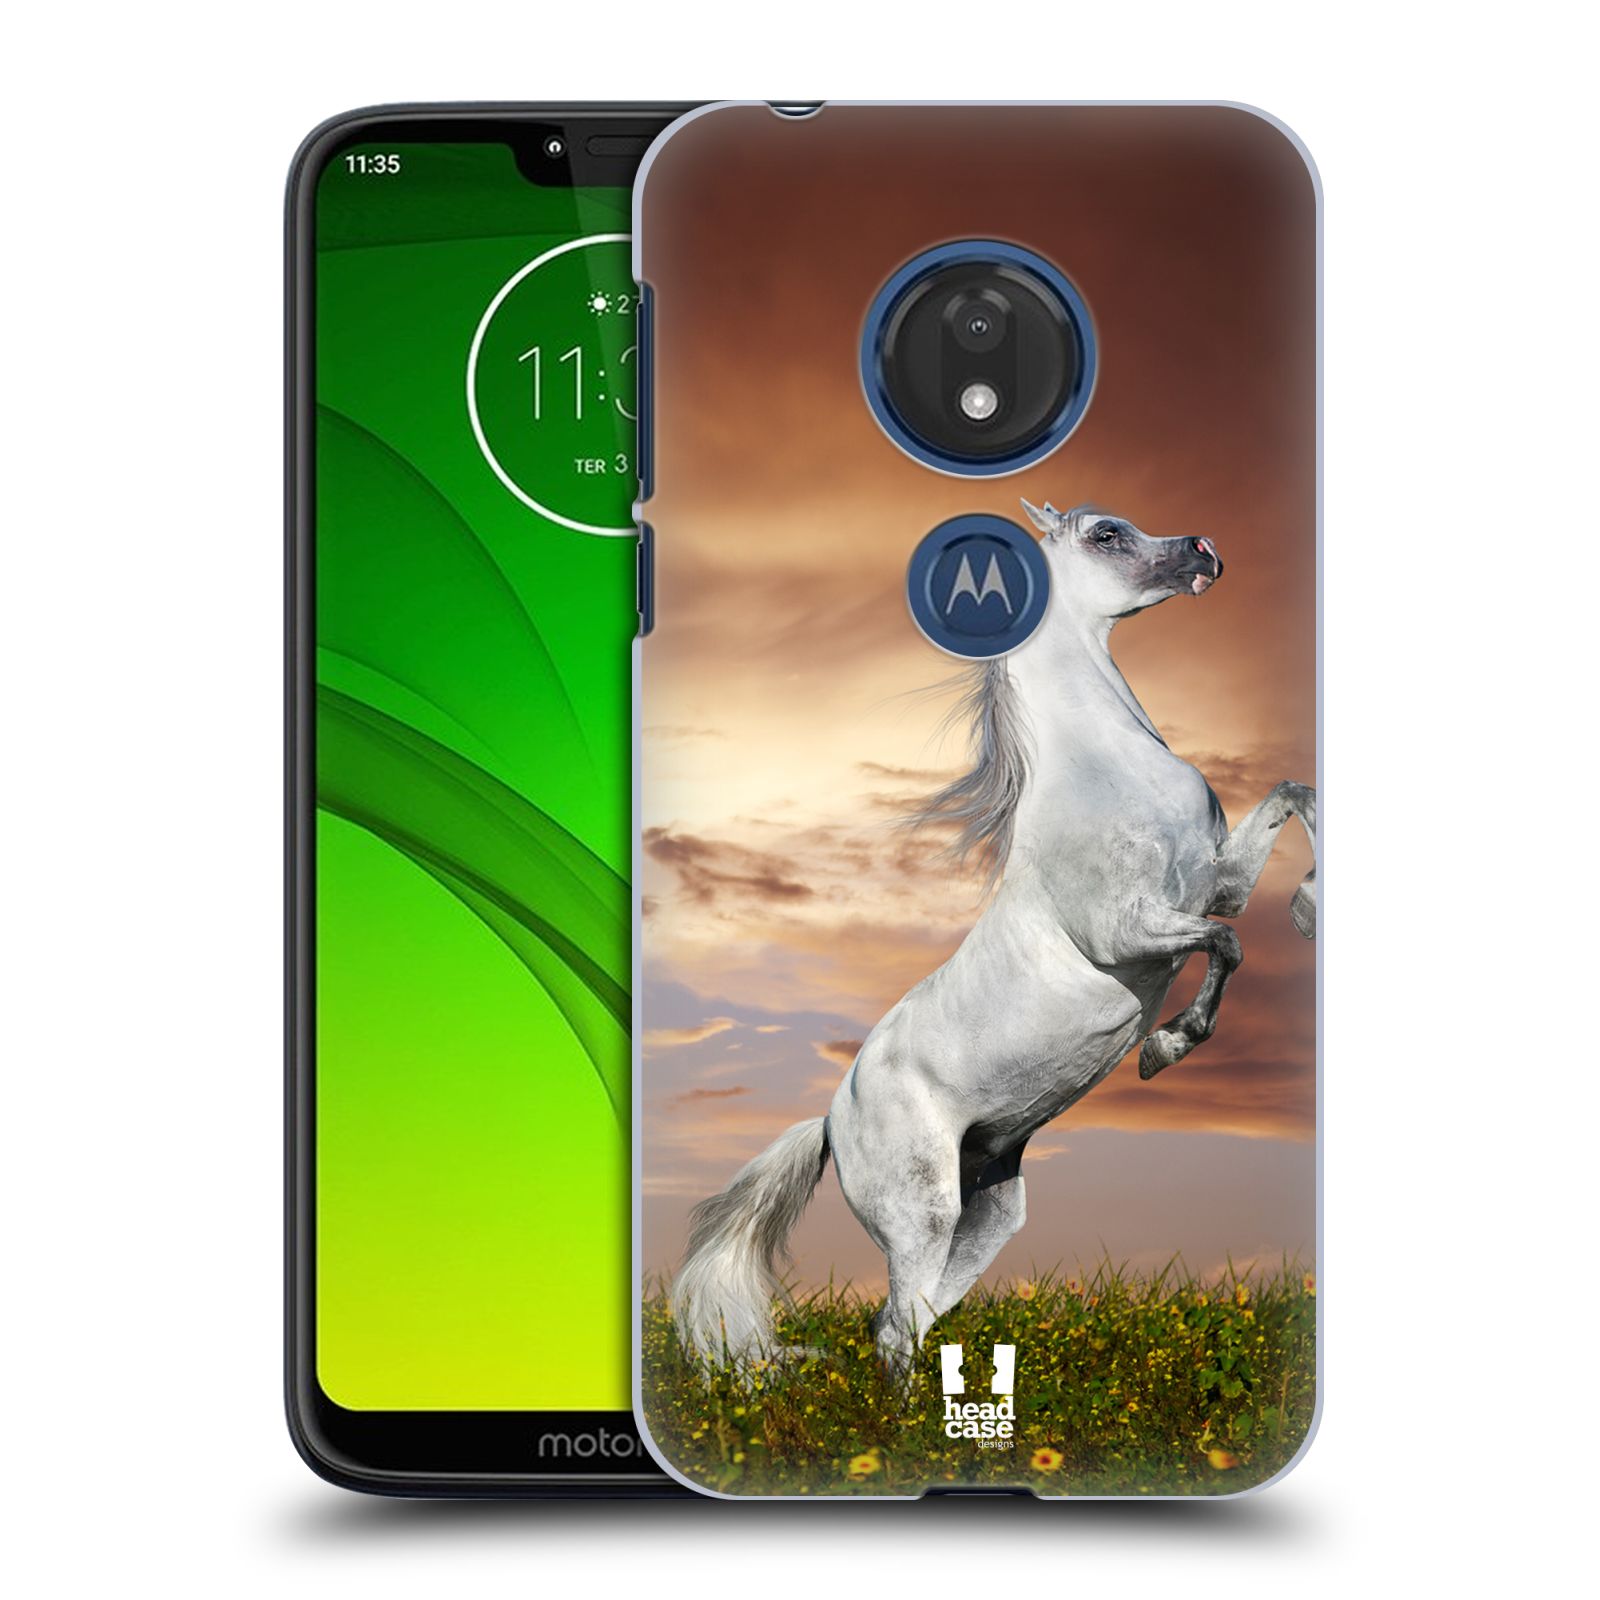 Pouzdro na mobil Motorola Moto G7 Play vzor Divočina, Divoký život a zvířata foto DIVOKÝ KŮŇ MUSTANG BÍLÁ